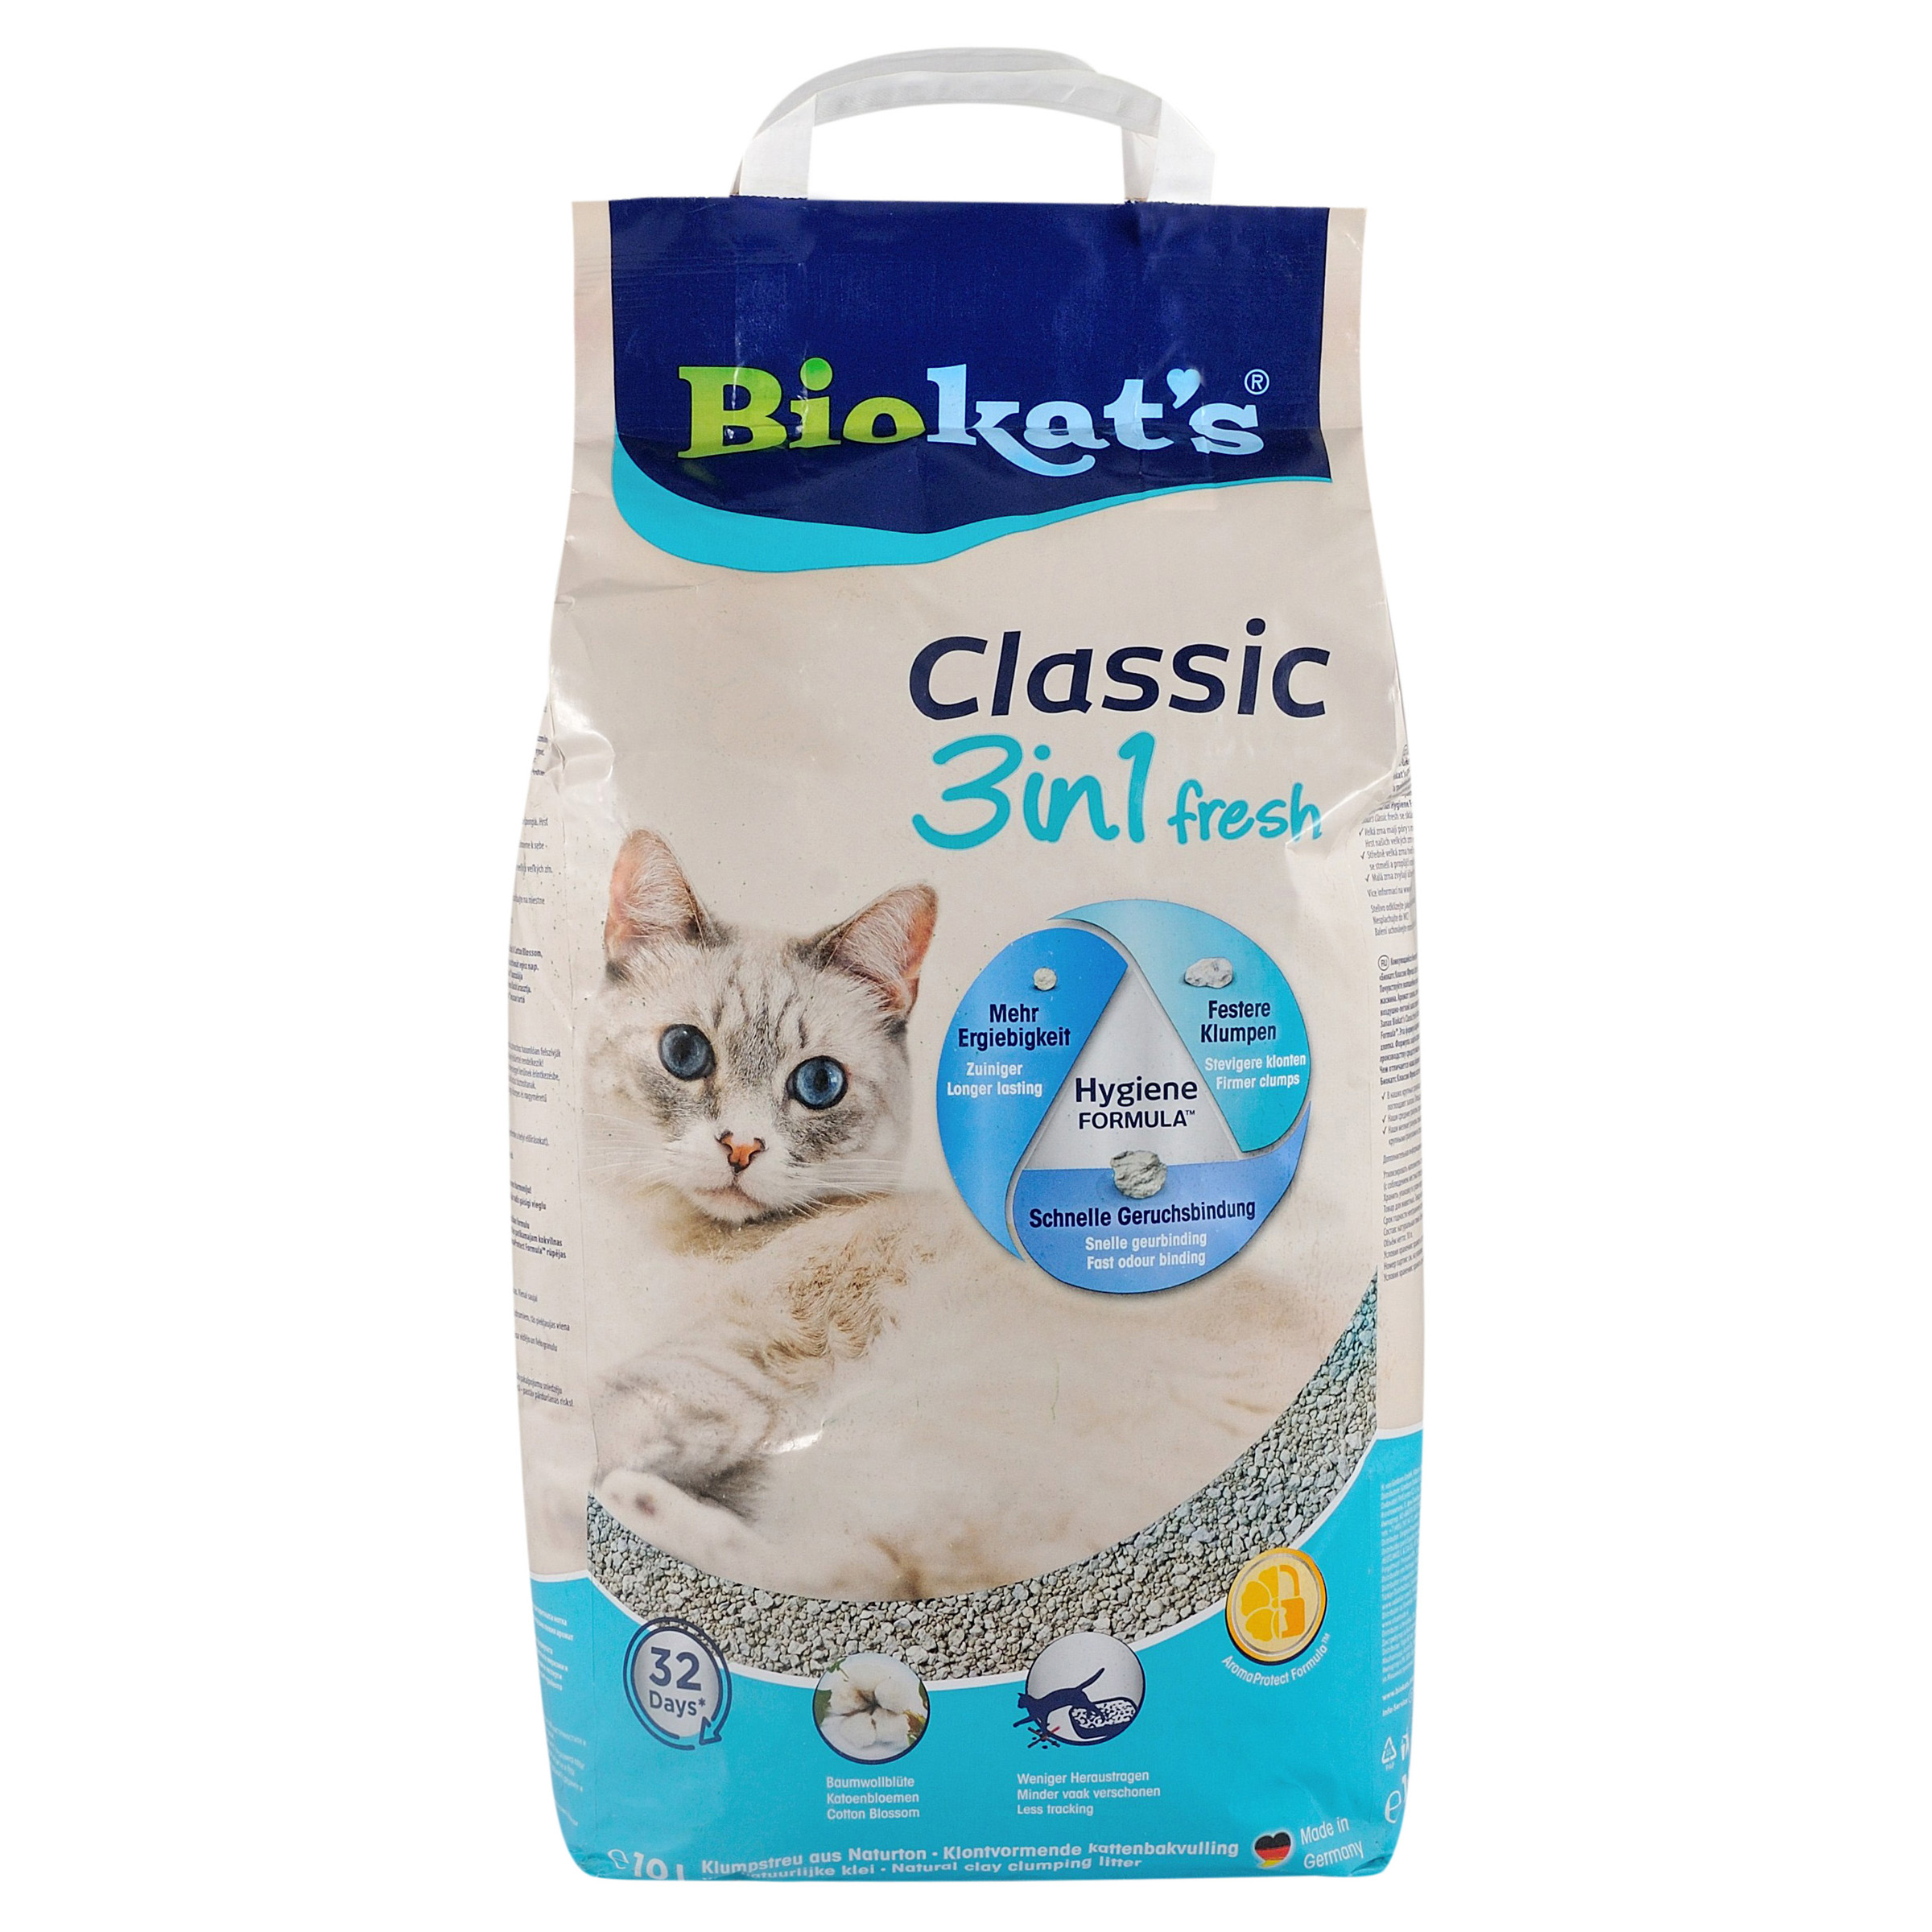 Фото - Котячий наповнювач Biokats Бентонітовий наповнювач Biokat's Classic Fresh 3in1 Cotton Blossom з арома 